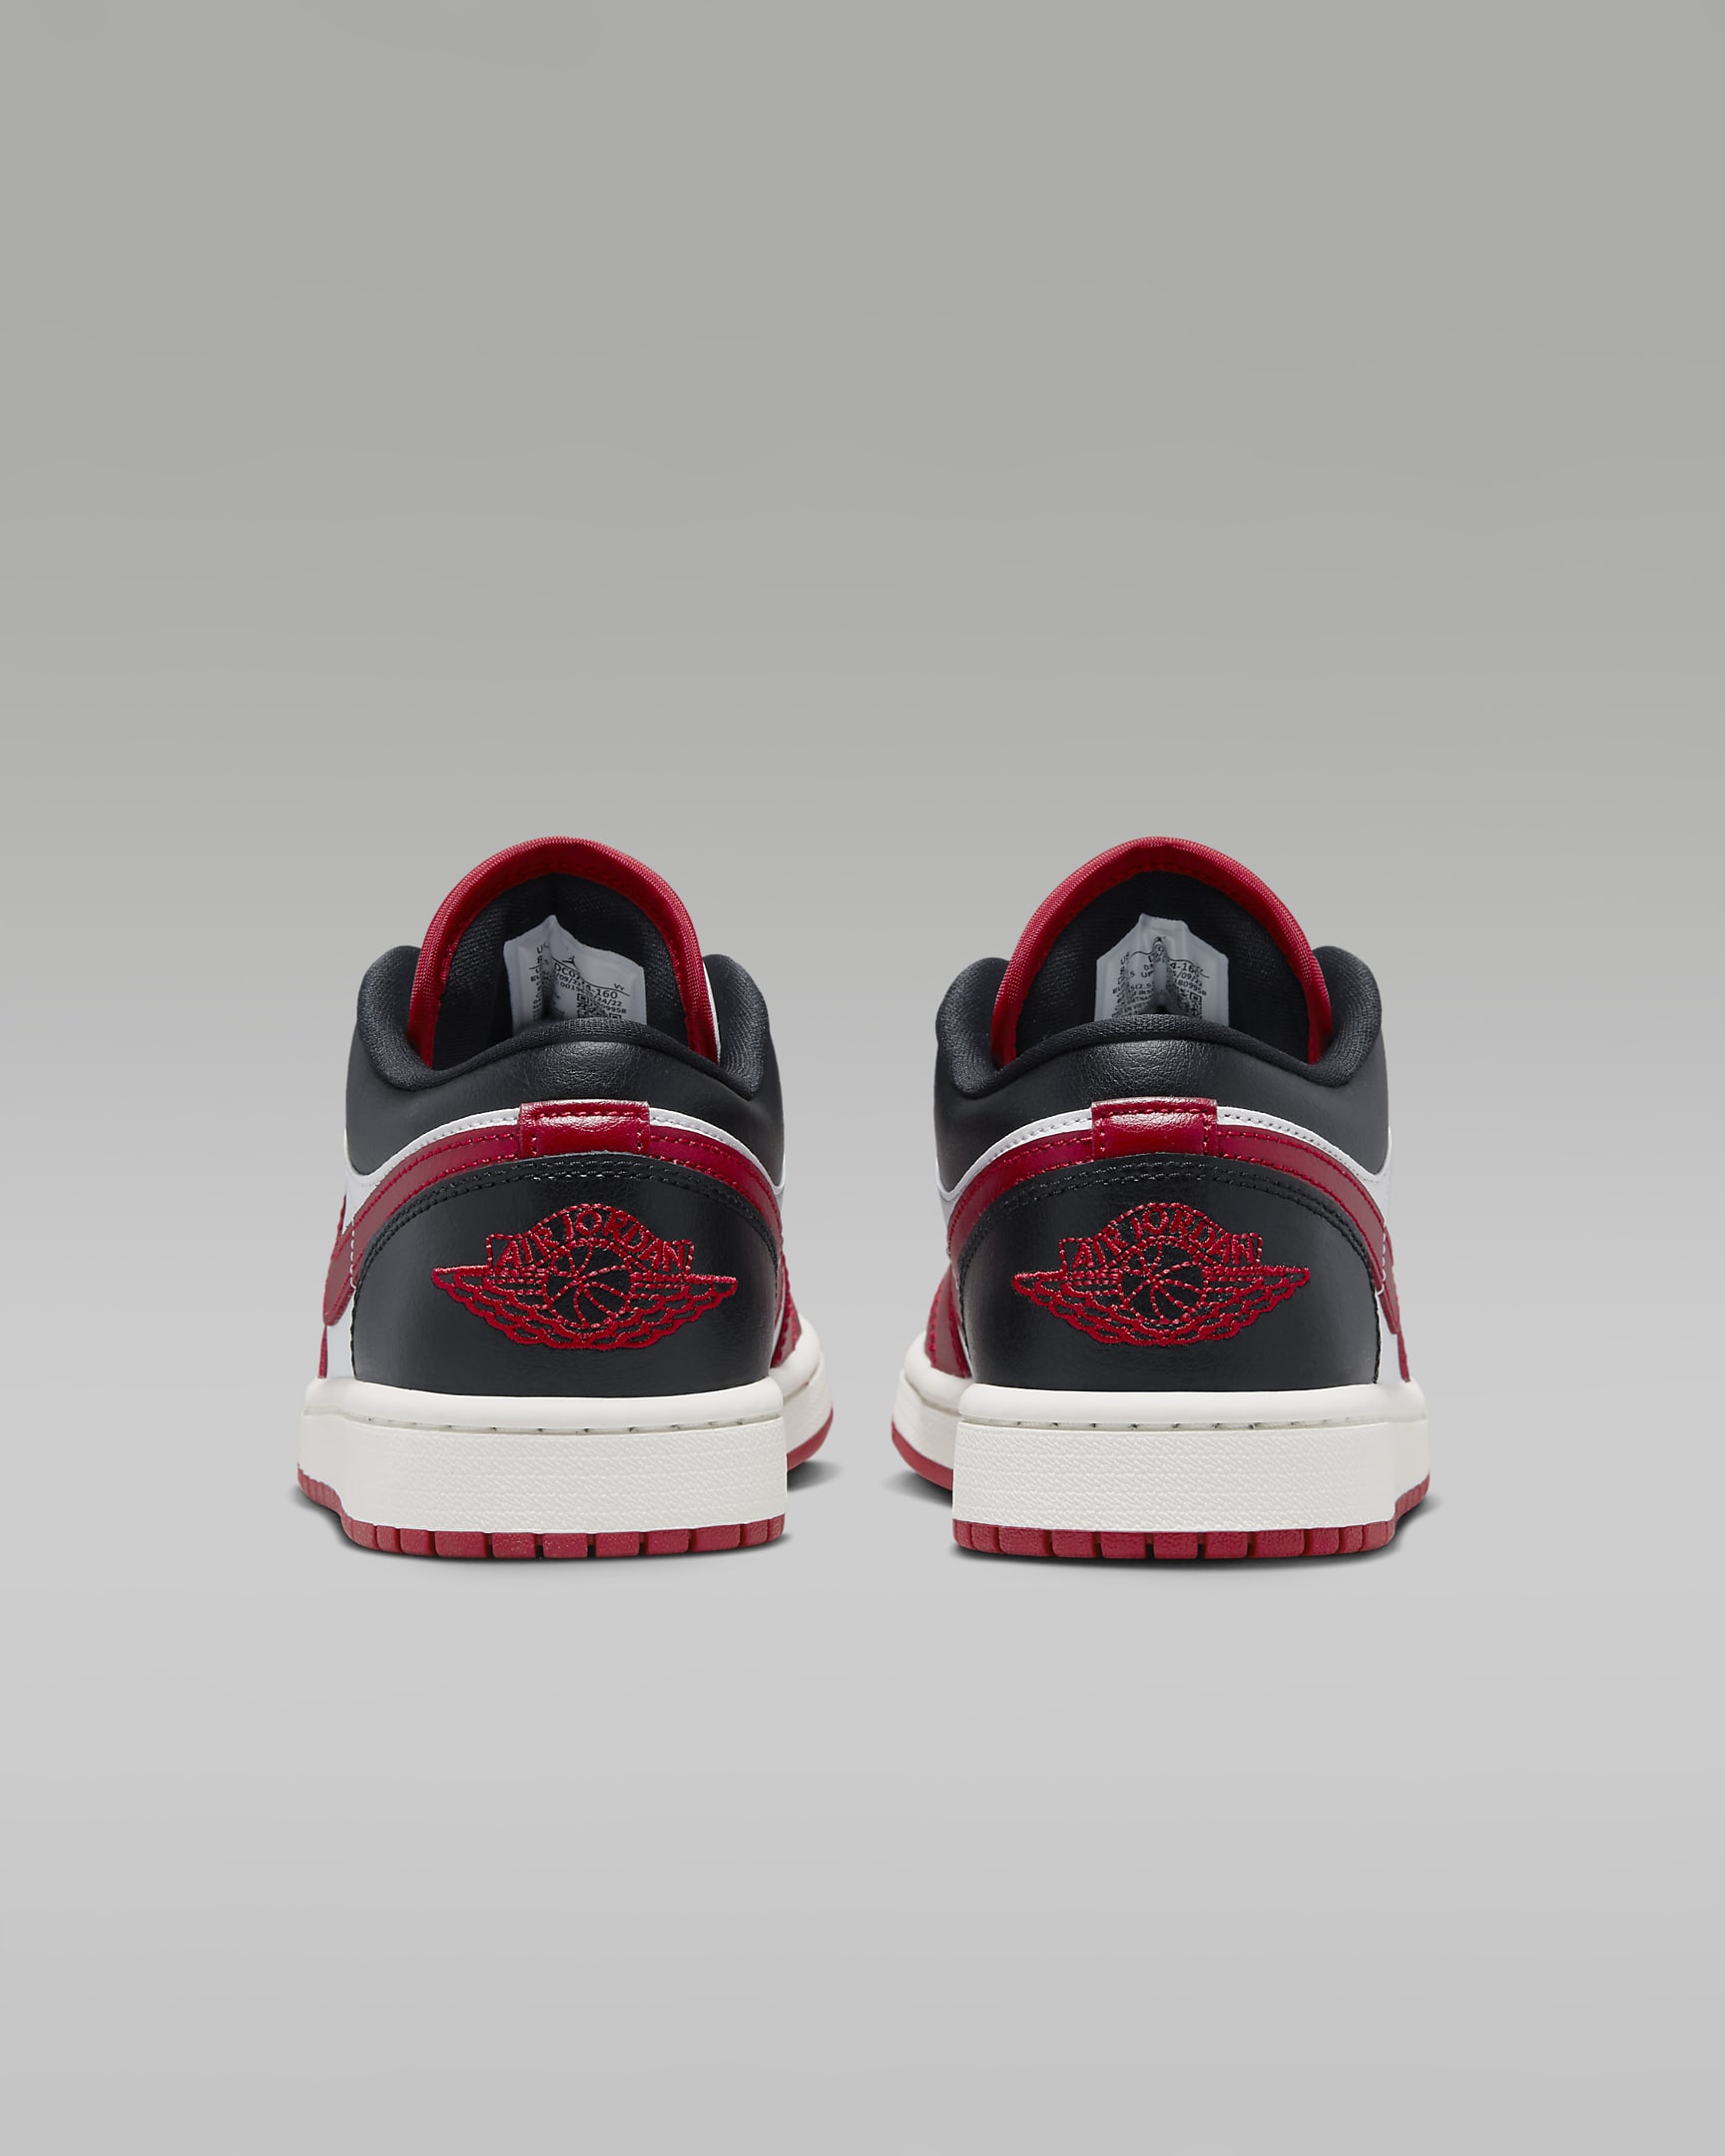 Air Jordan 1 Low Women's Shoes - White/Black/Sail/Gym Red